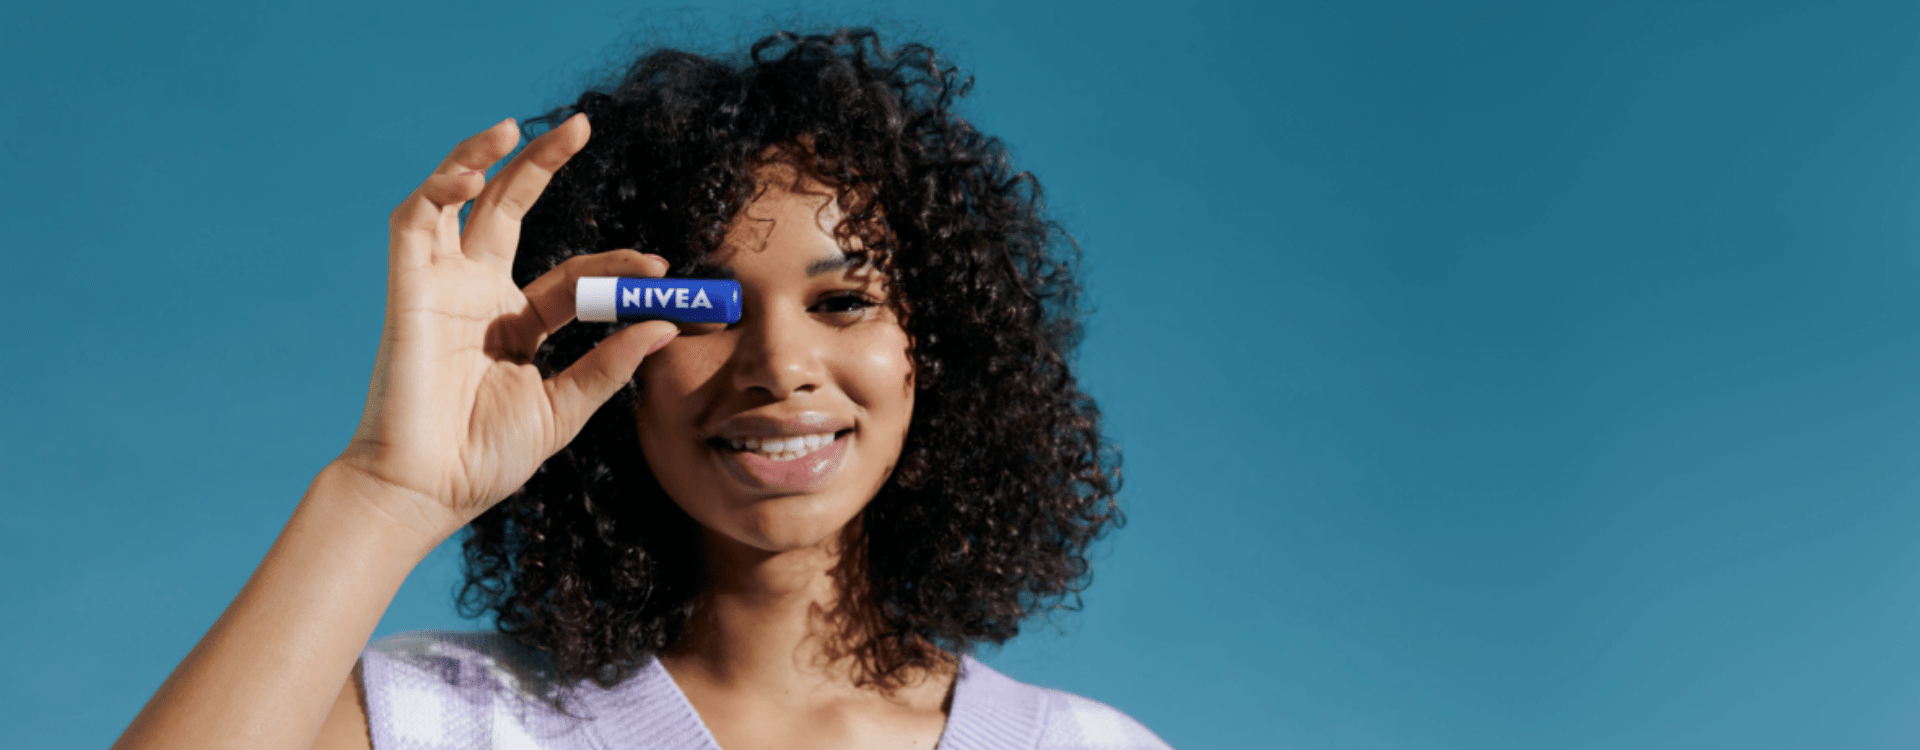 Tampil Menawan Saat Lebaran dengan NIVEA Lip Balm Swatches